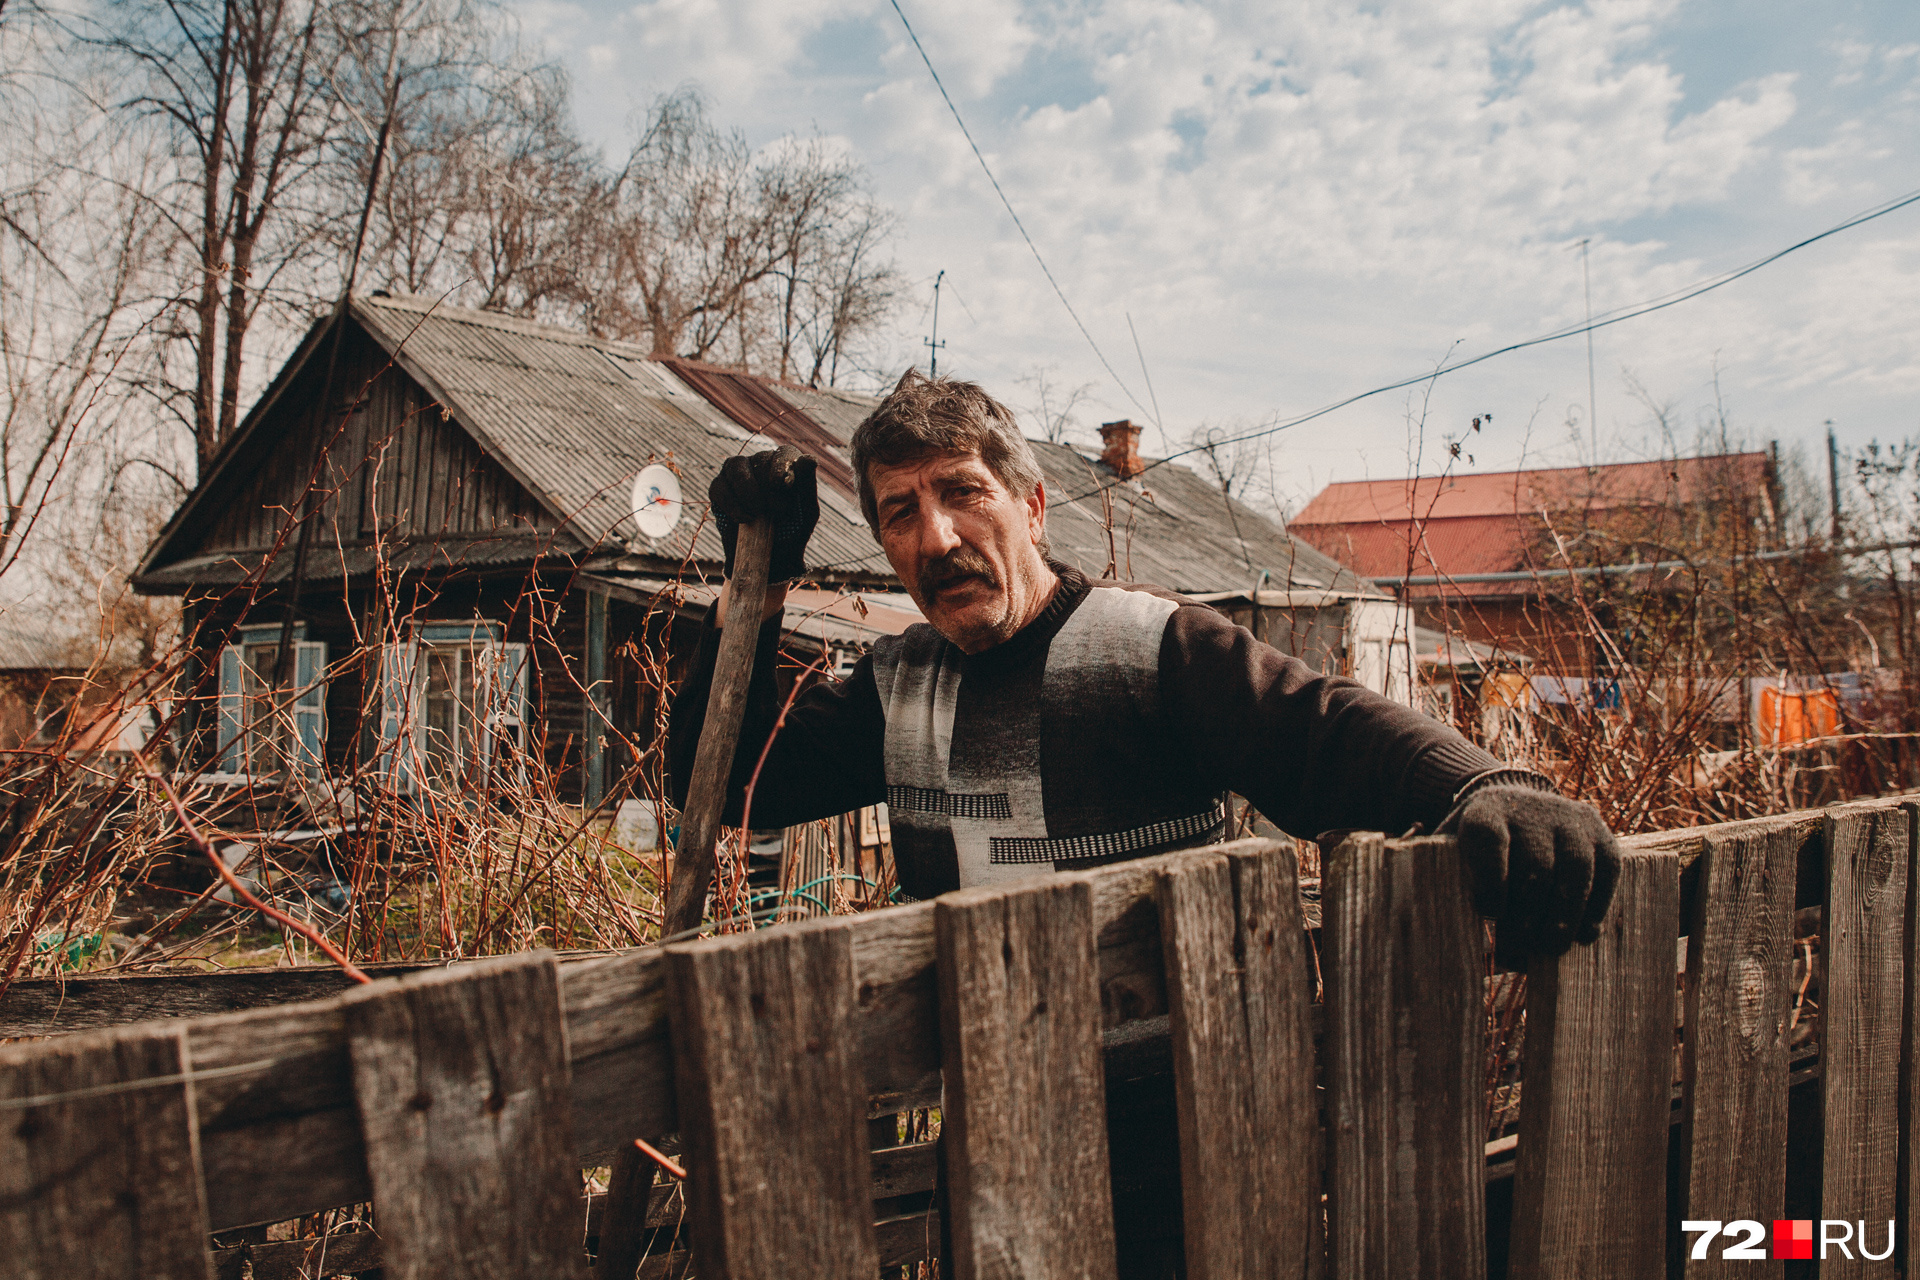 Саркис приехал в Тюмень из Армении. После 15 лет работы на комбинате вышел на пенсию. В свободное время занимается огородом